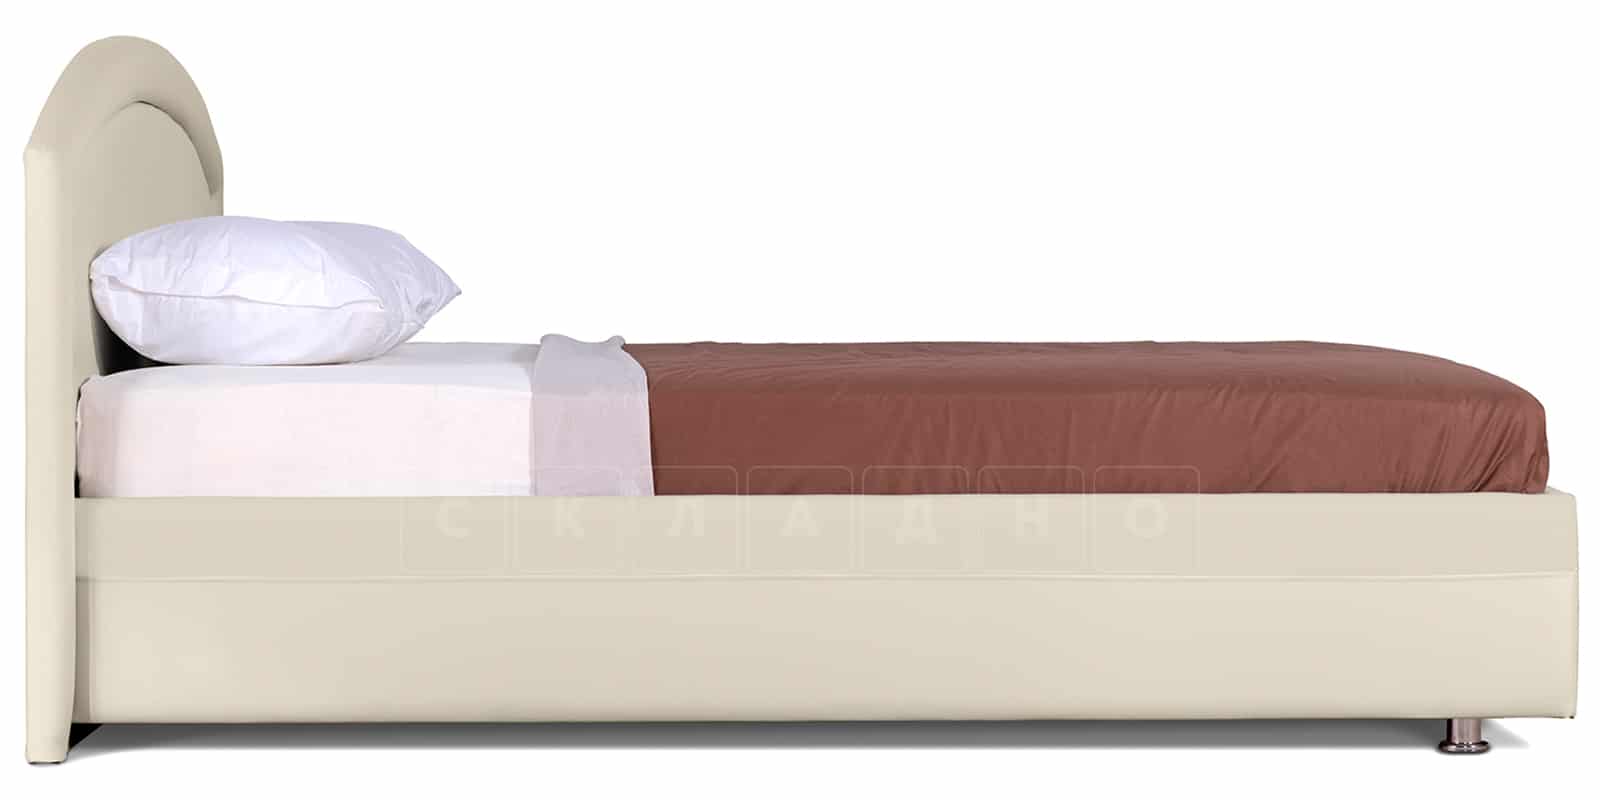 Мягкая кровать Малибу 160 см экокожа бежевый вариант 8 фото 4 | интернет-магазин Складно